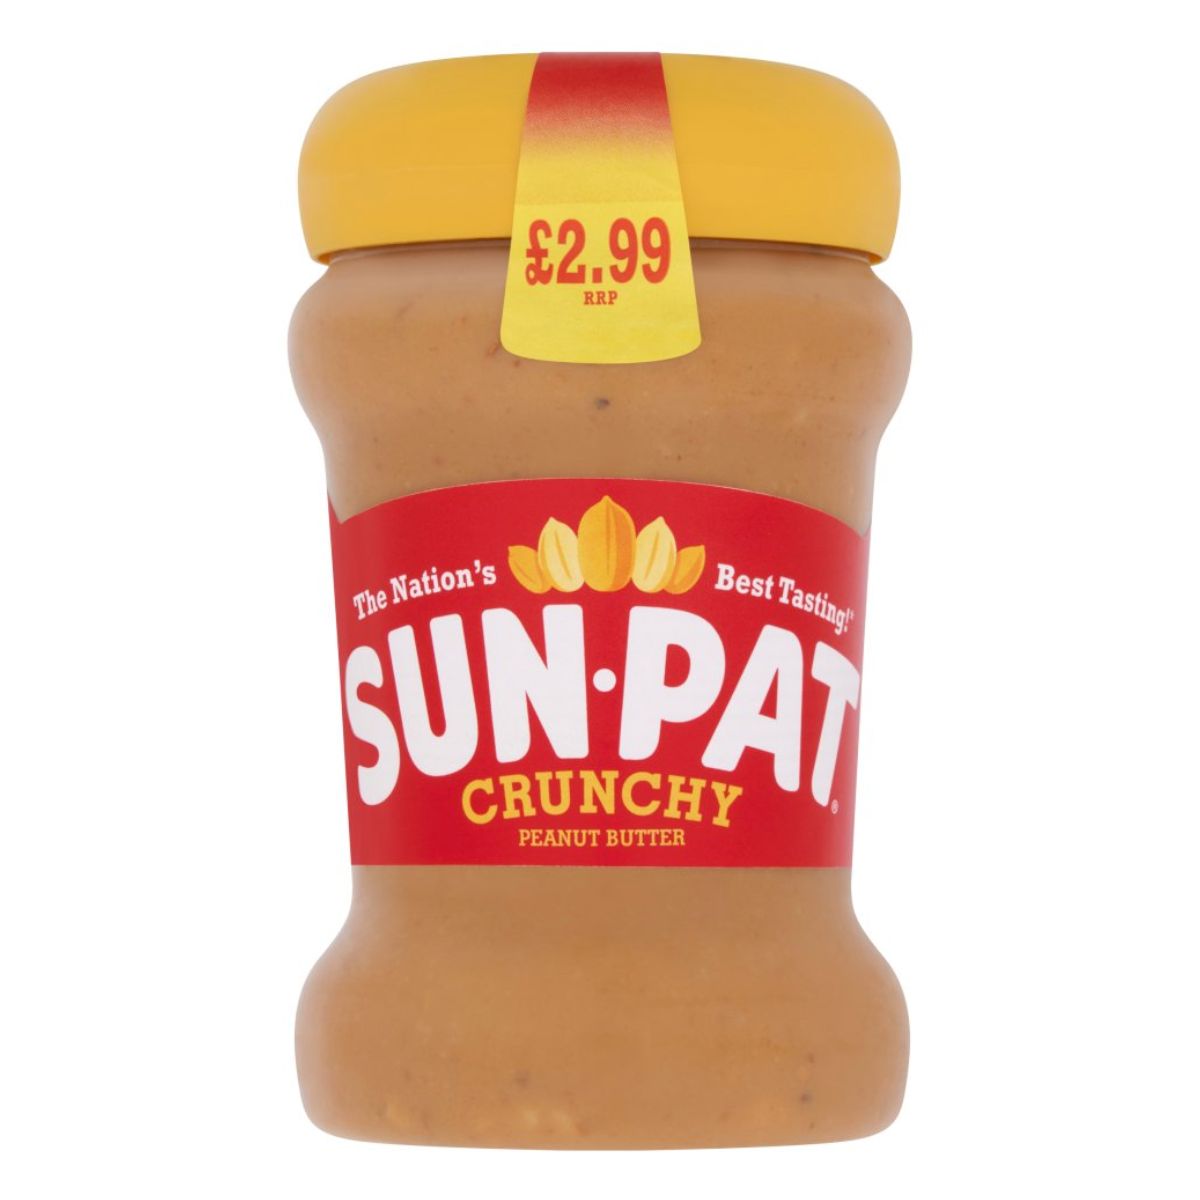 A jar of Sun Pat - Crunchy Peanut Butter - 300g.